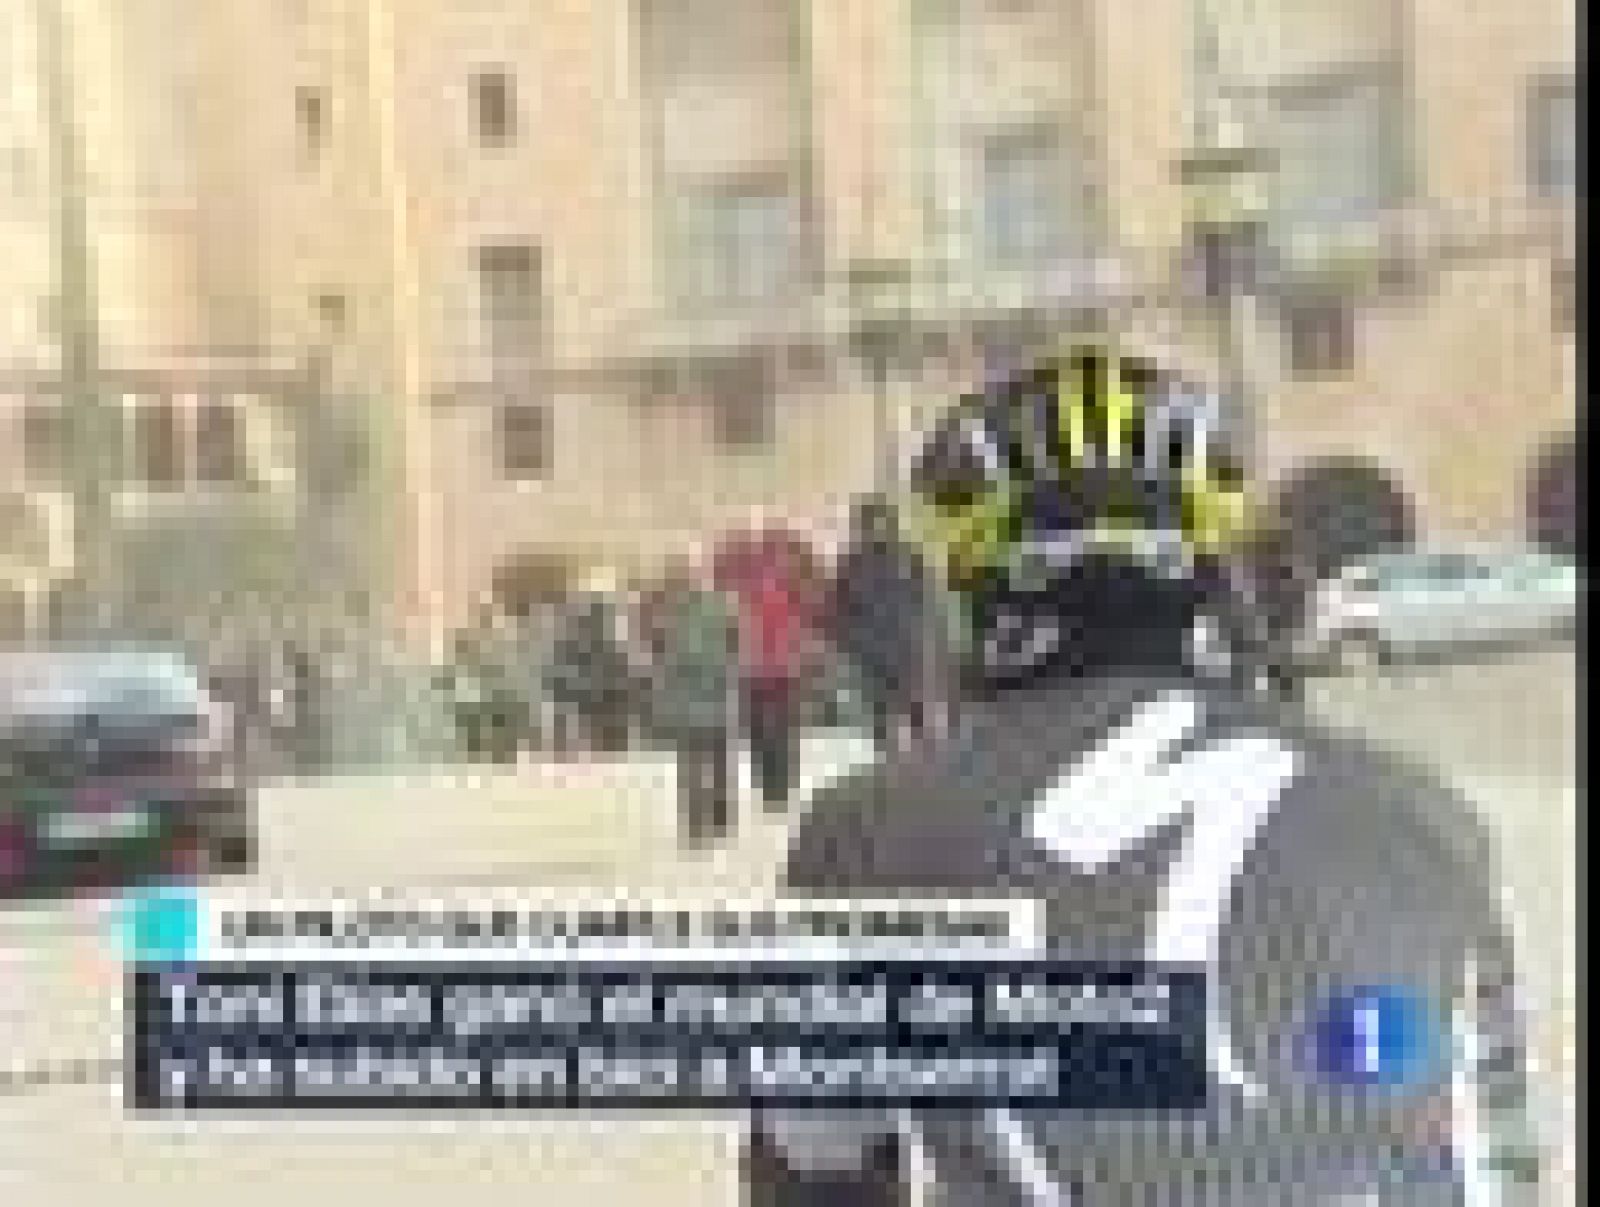 El manresano se comprometió en 'Paddock GP' a subir Montserrat en bici si ganaba el Mundial, y lo hizo acompañado de Ernest Riveras, Álex Crivillé y el ciclista Samuel Sánchez